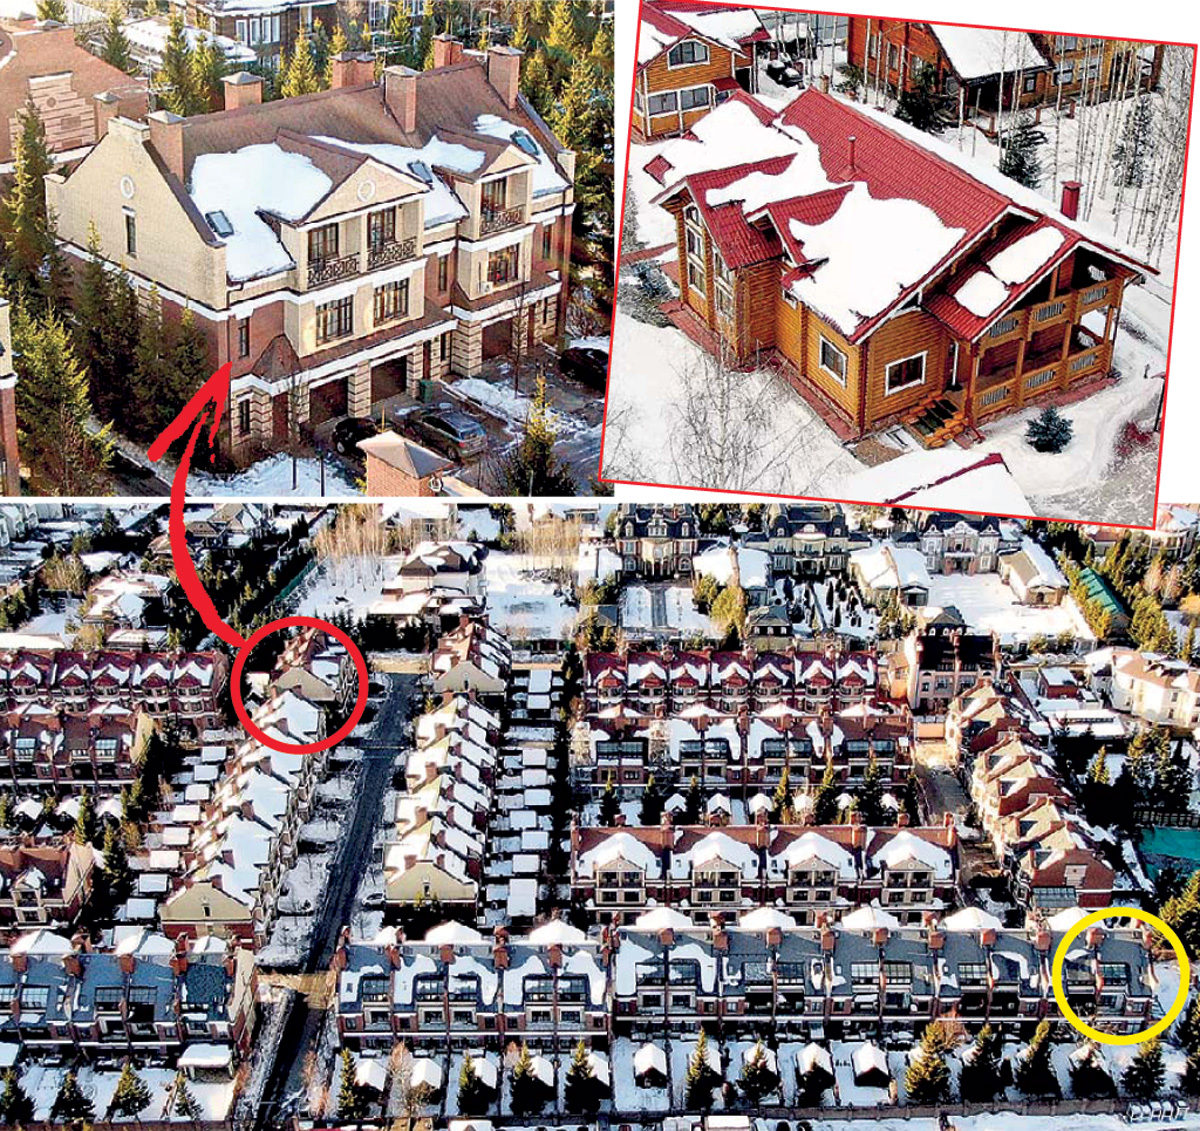 Продав уютный дом из сруба (на фото справа), Воля поселился в таунхаусе (на нижнем снимке выделен красным кругом) рядом с апартаментами Собчак (желтый круг). Фото Руслана Вороного/«Экспресс газета»